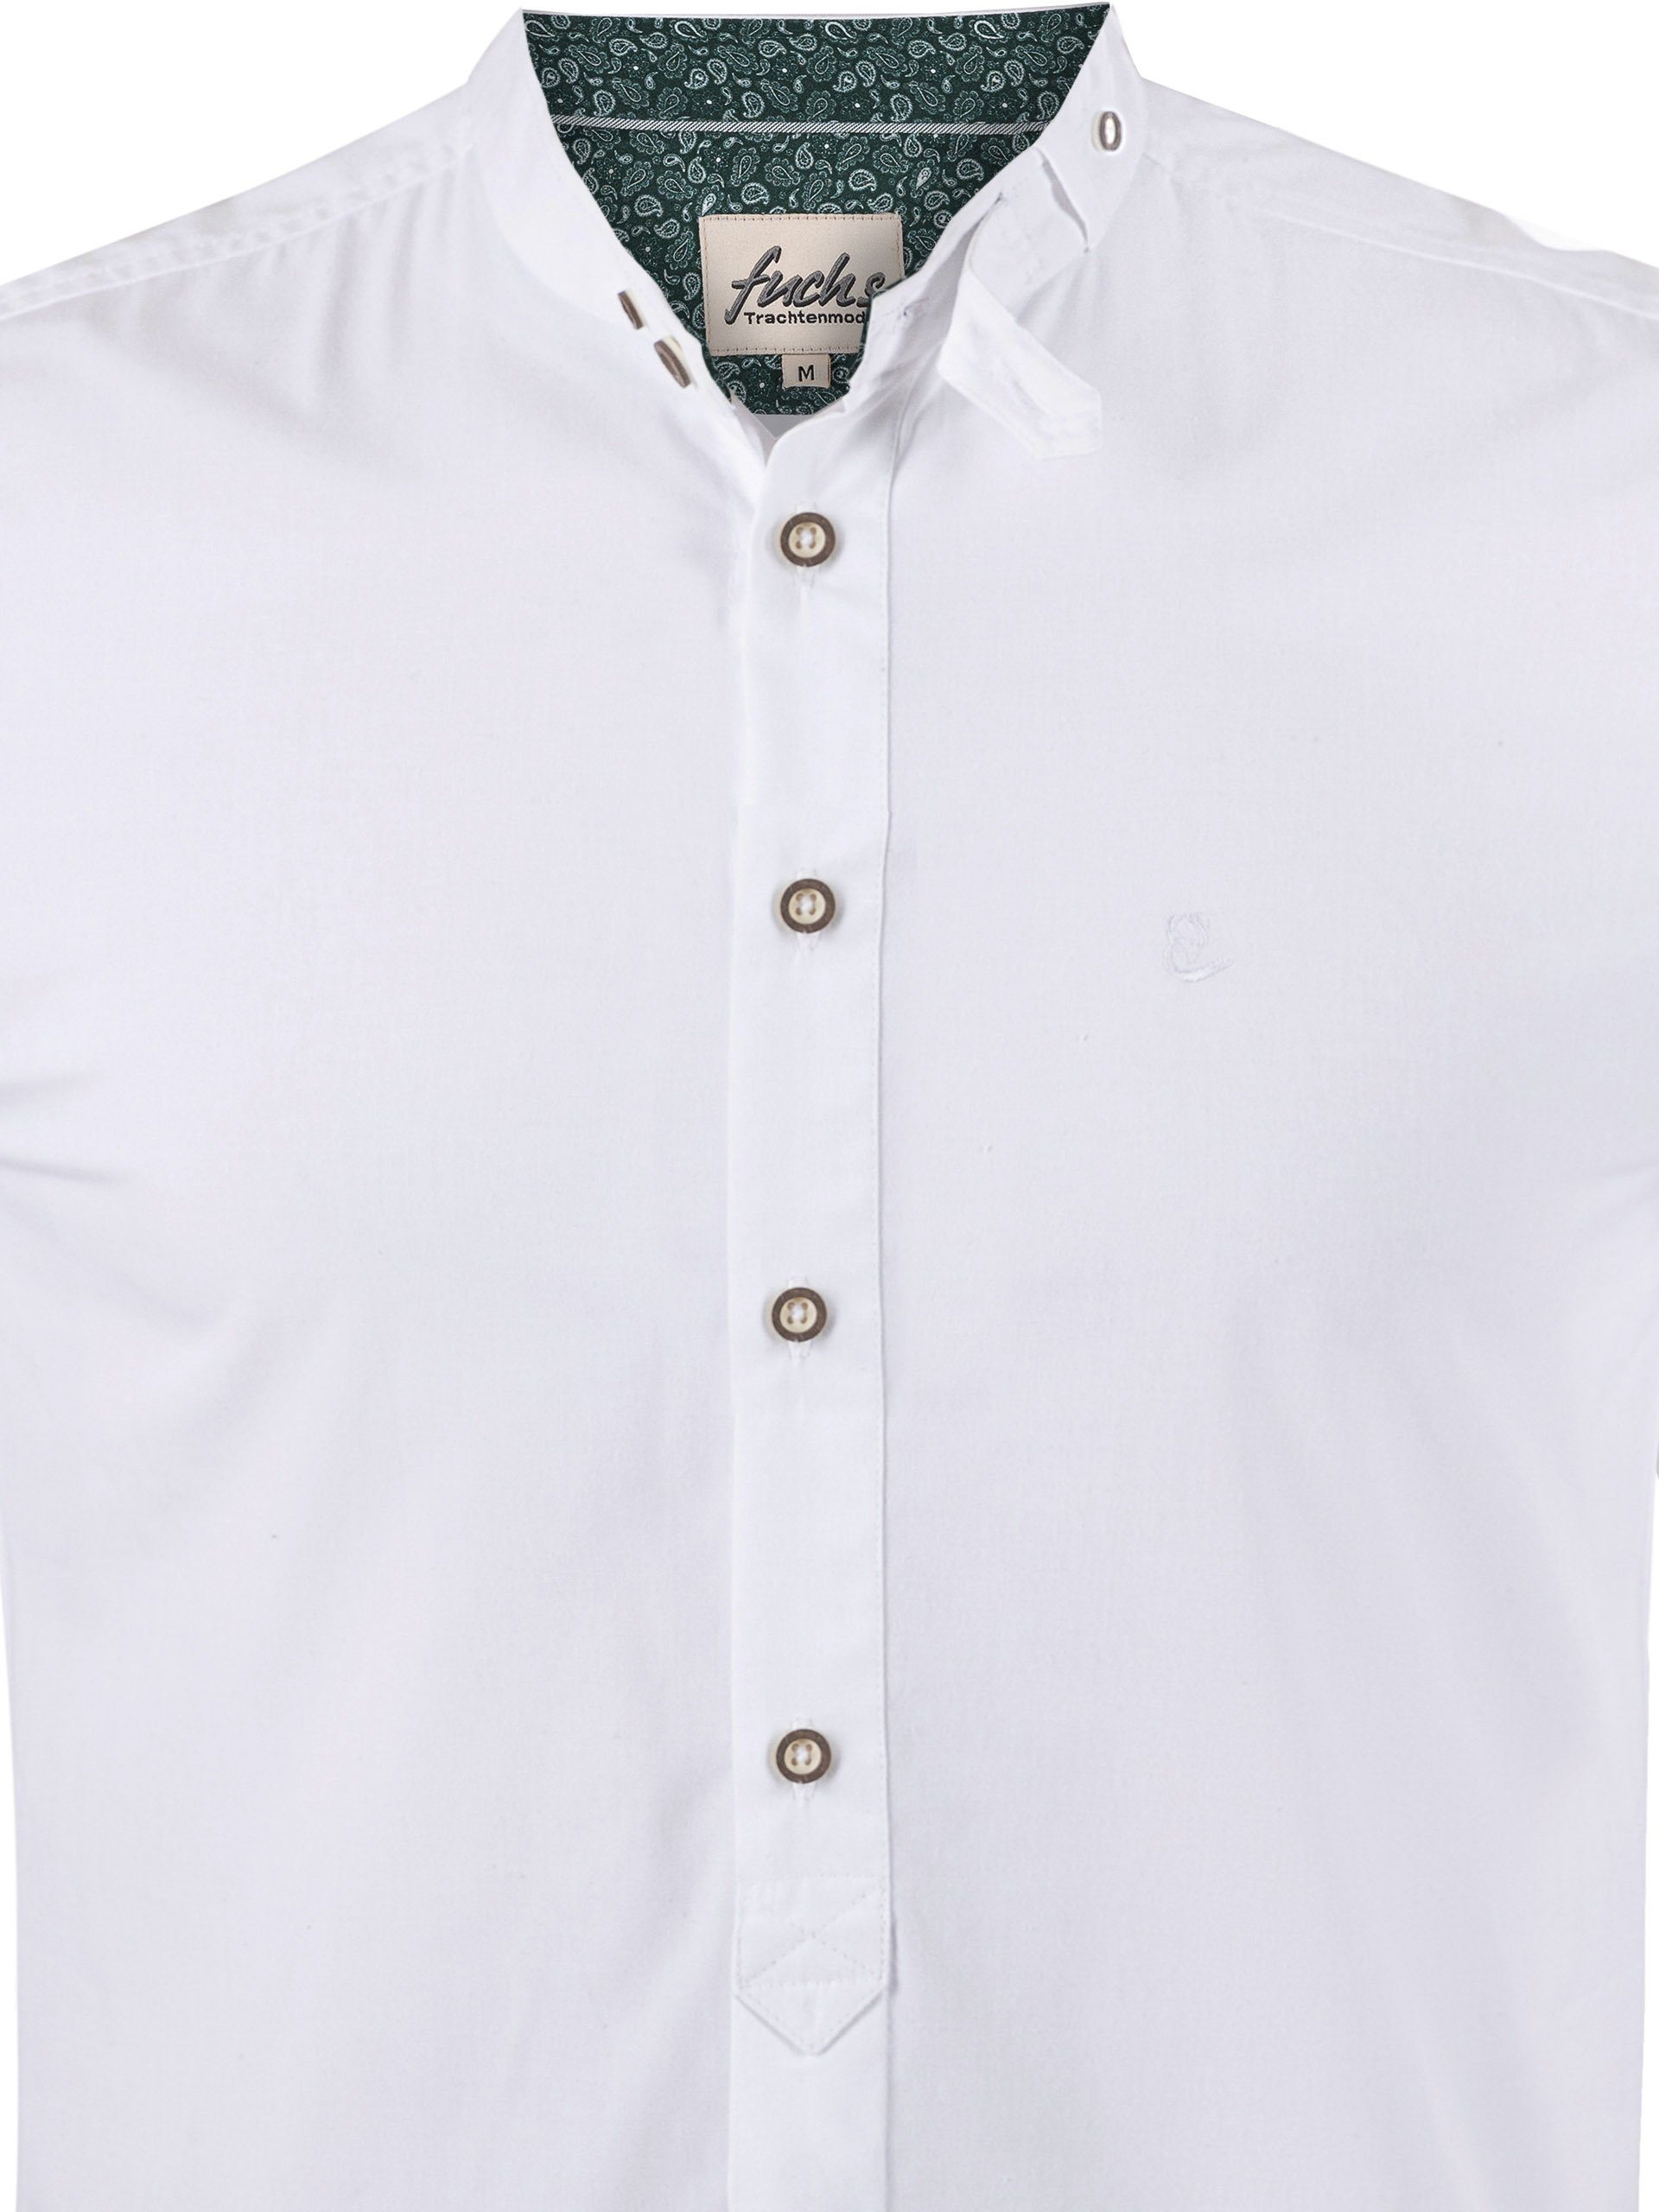 FUCHS Trachtenhemd Hemd Albert mit Stehkragen weiß-tanne